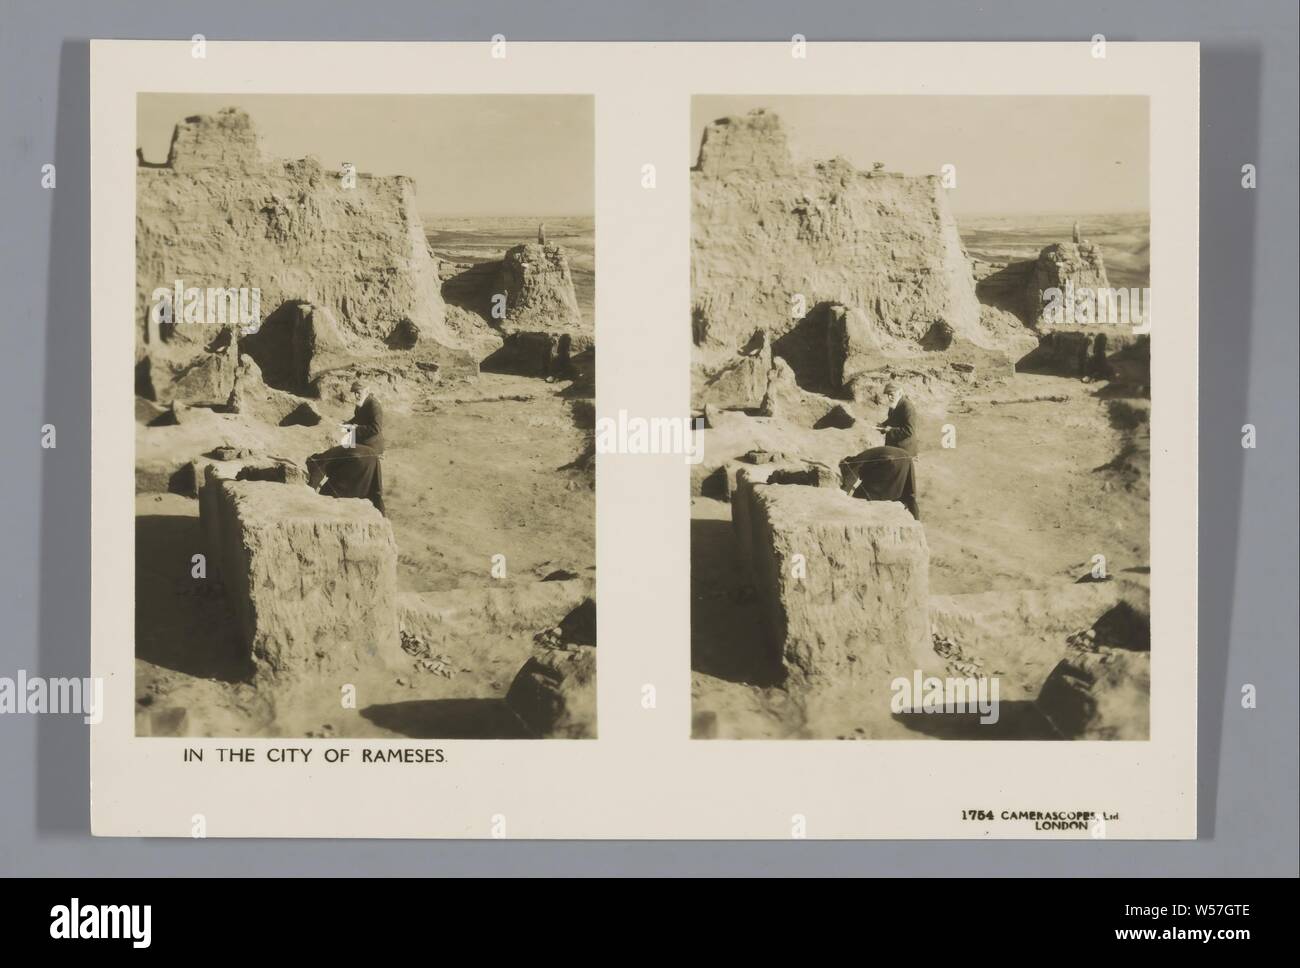 En la ciudad de Rameses, Camerascopes Ltd., 1920 - 1940 Foto de stock